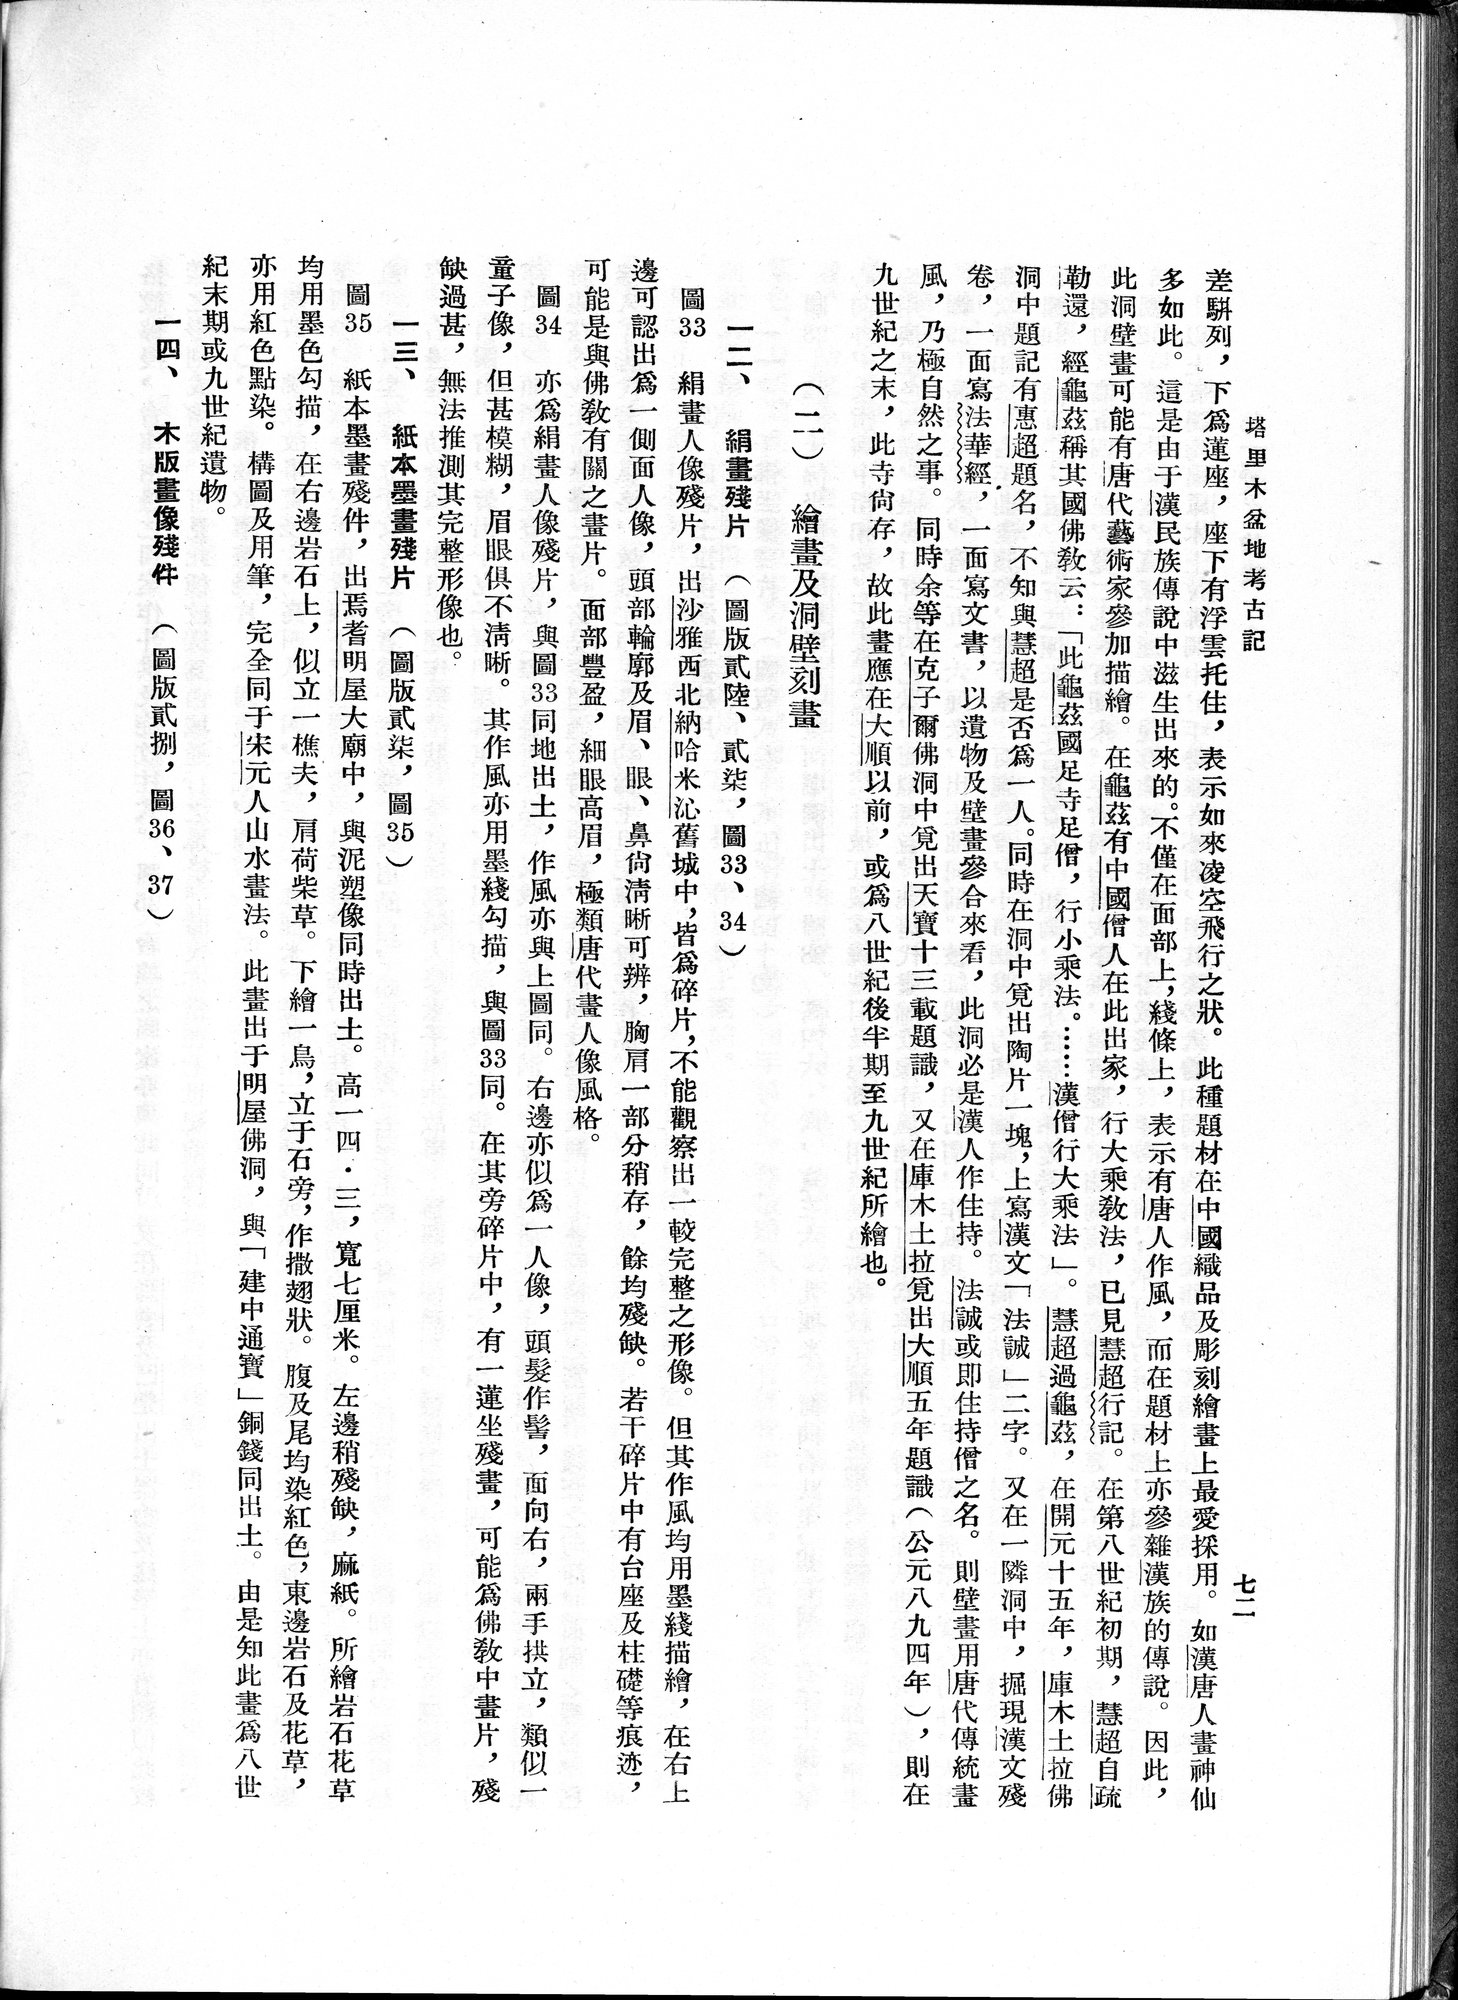 塔里木盆地考古記 : vol.1 / Page 136 (Grayscale High Resolution Image)